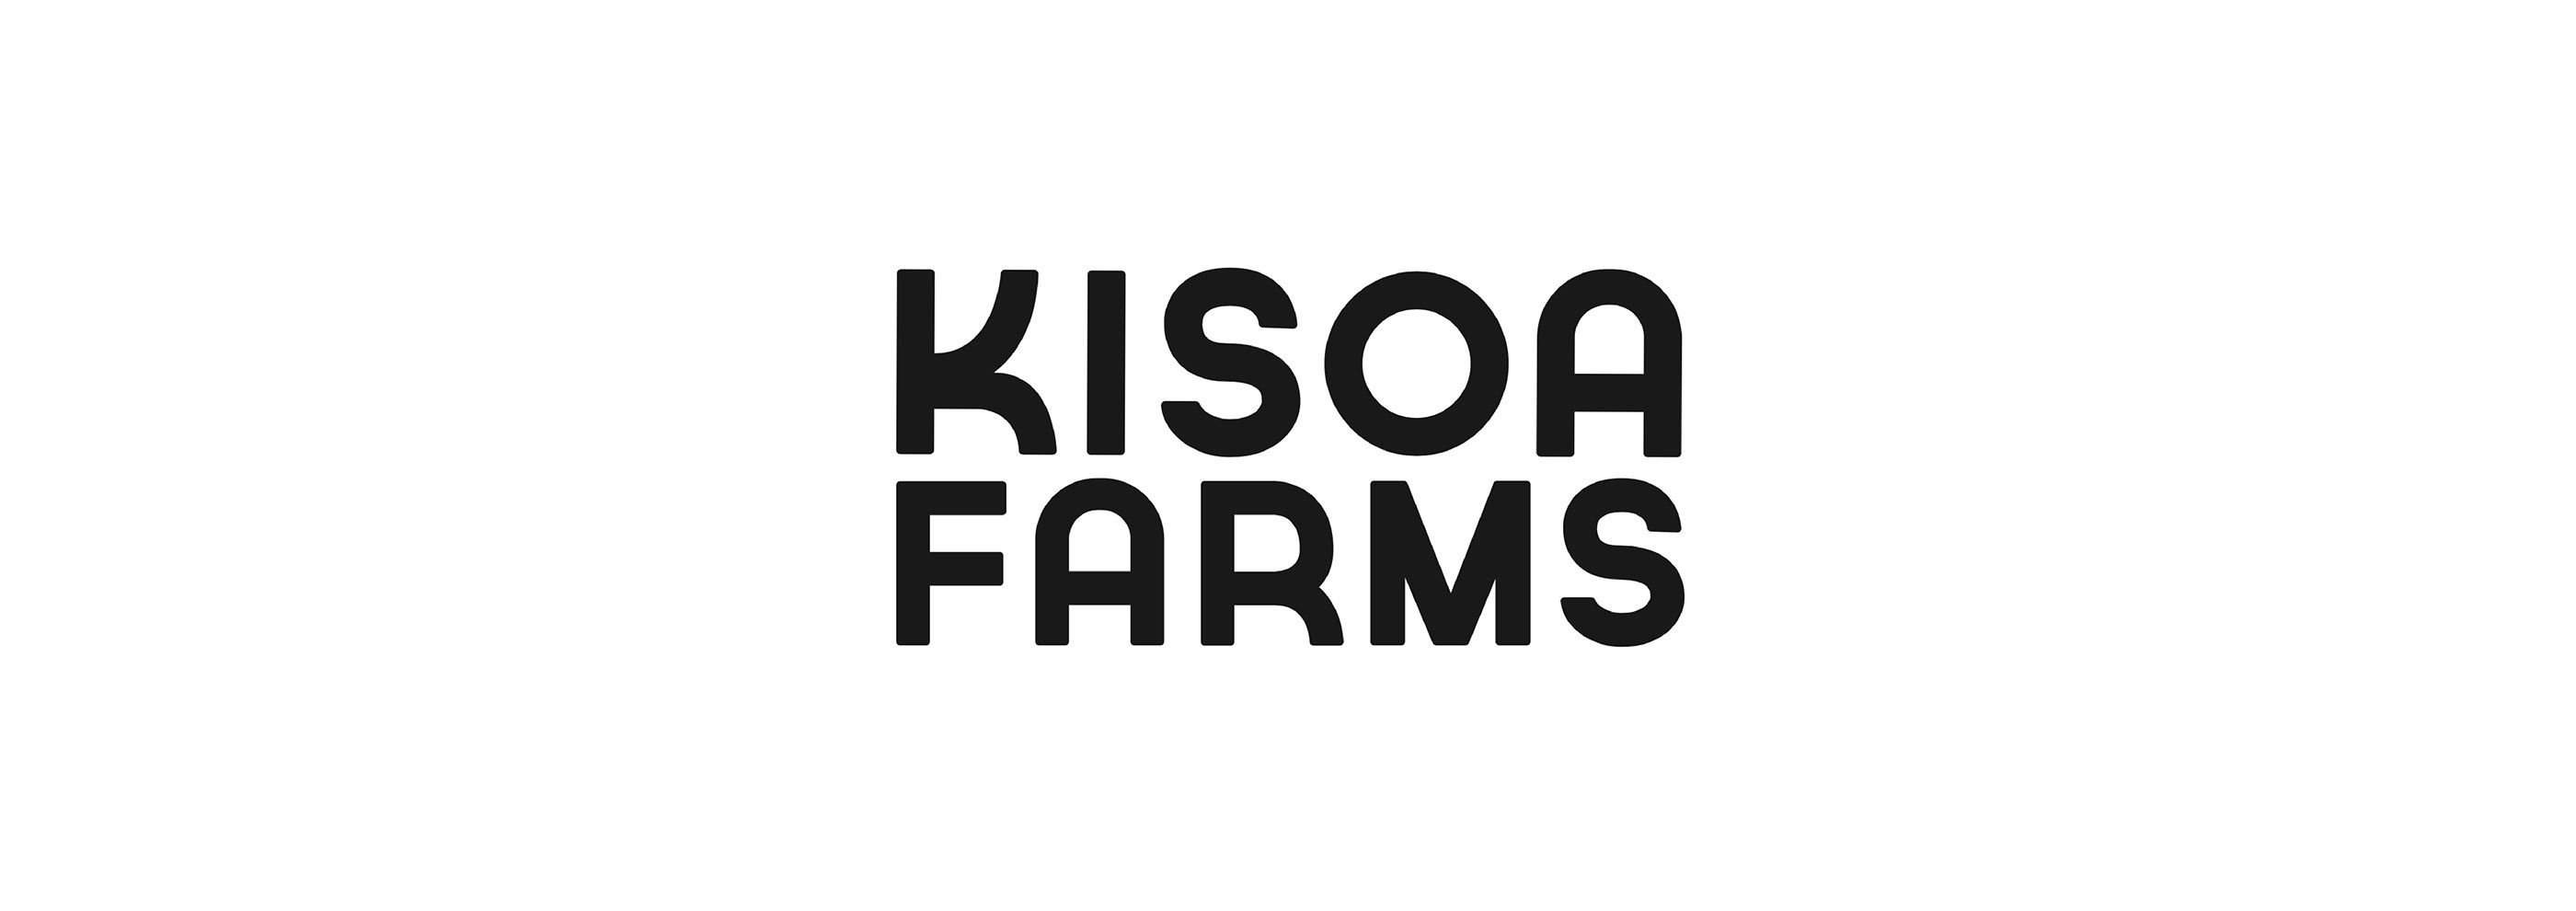 kisoa farms_1